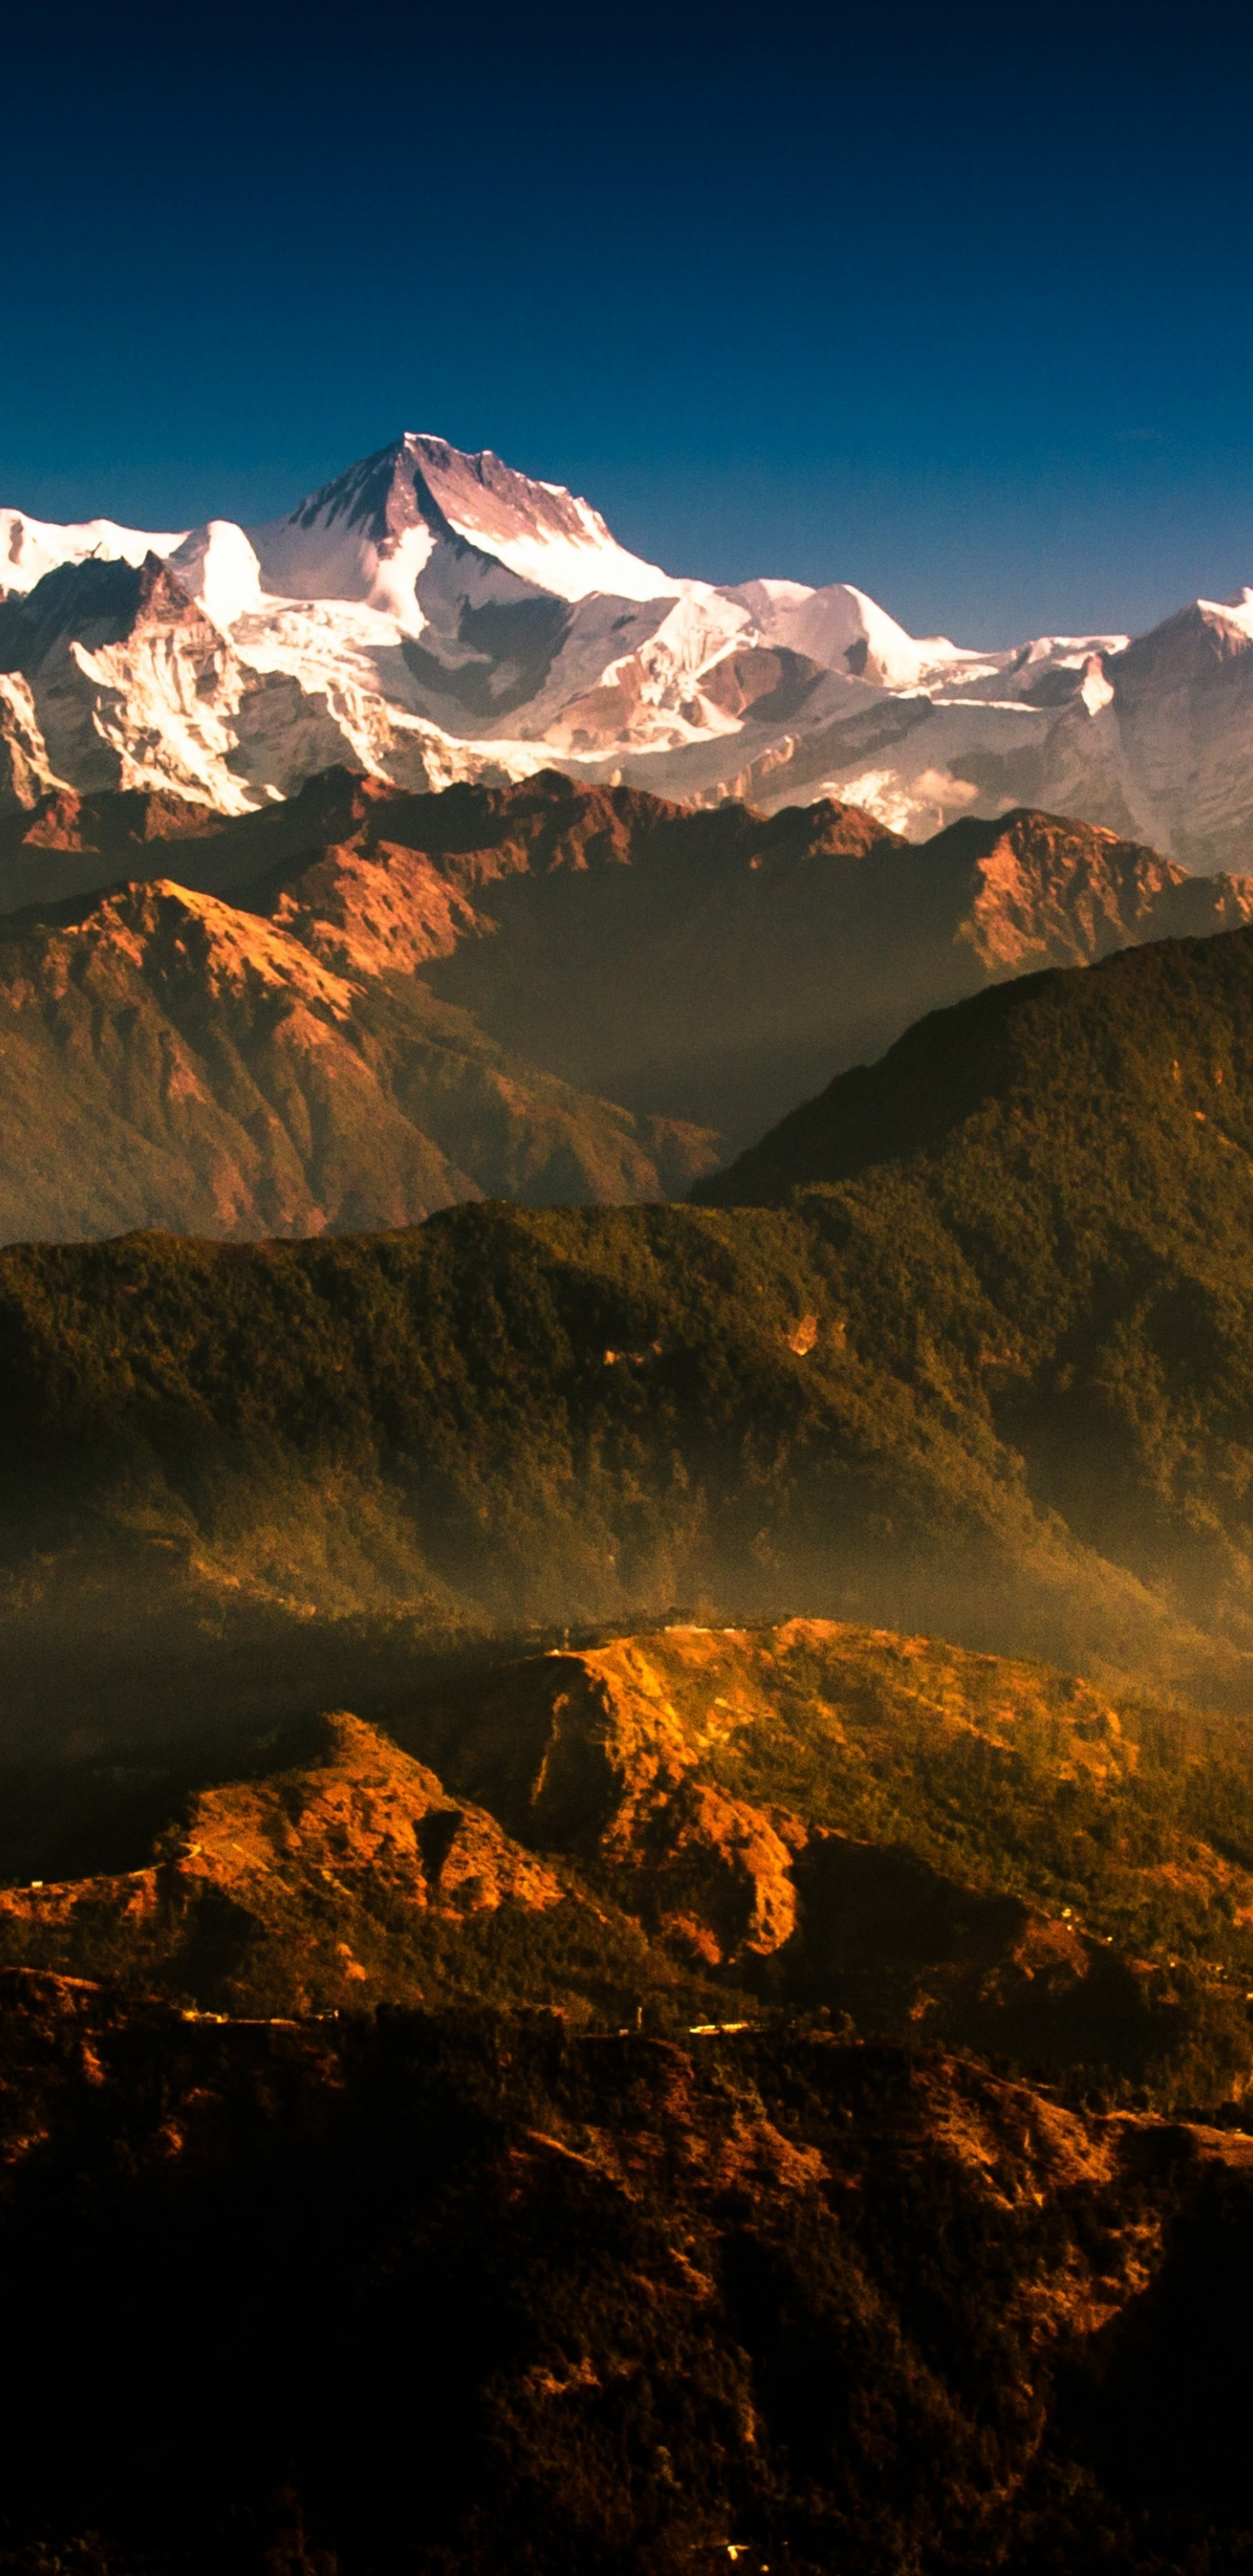 Download wallpaper 1440x2960 mountain, nepal, himalaya, mountains range ...